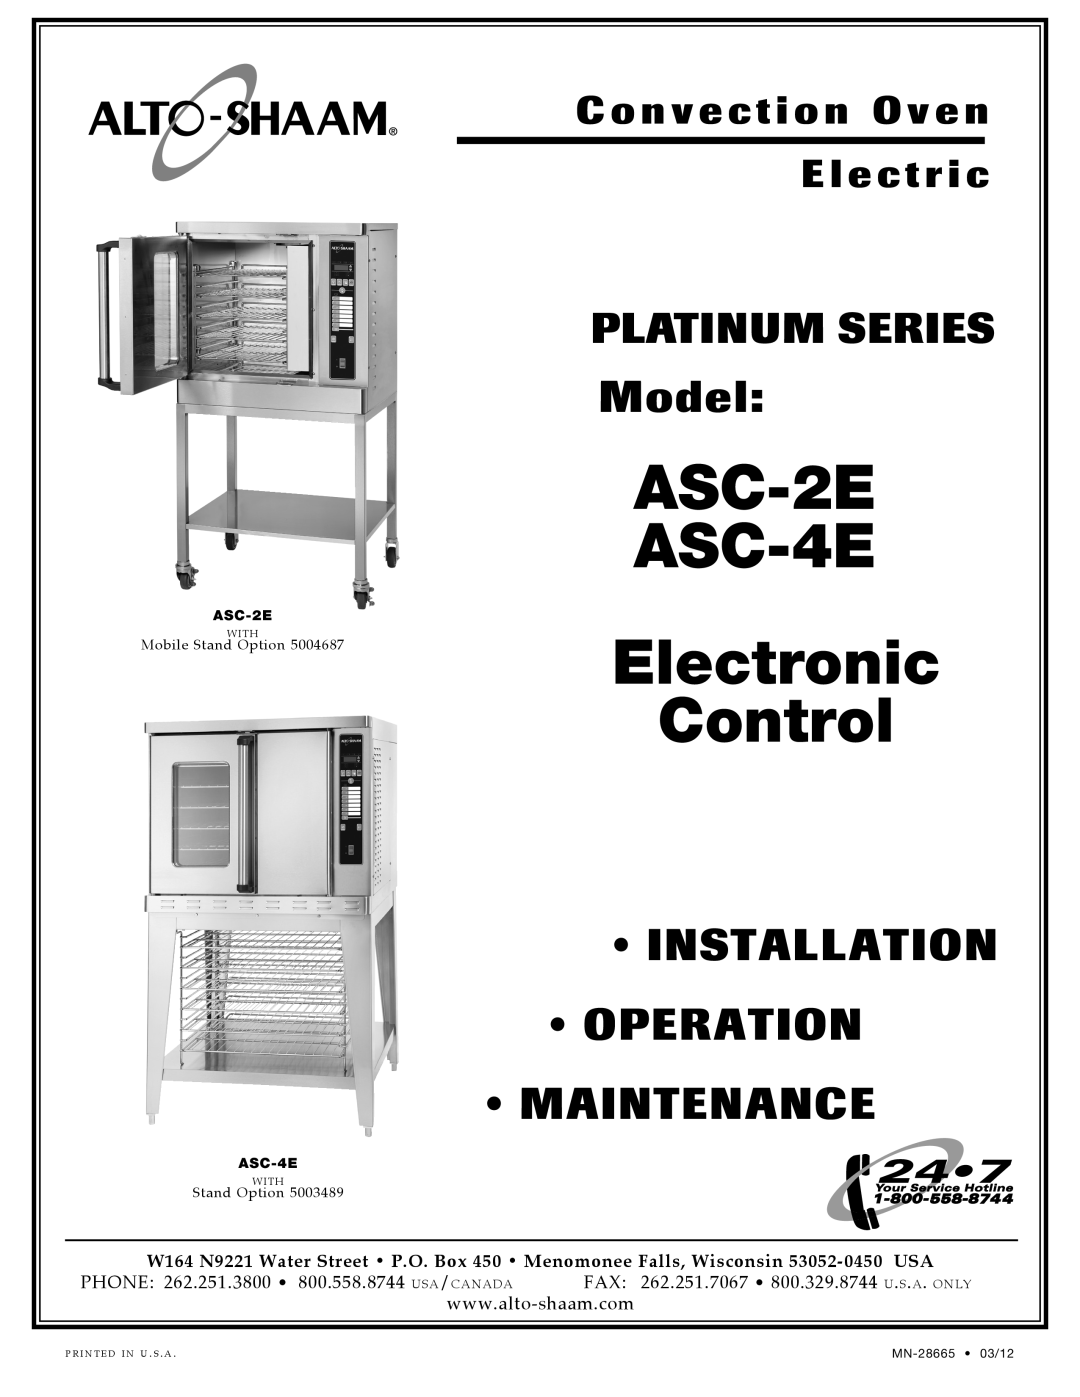 Alto-Shaam manual Mode l, Inst Allat Ion Oper Ation Mai Ntenance, ASC-2E ASC-4E Manual Control, MN- 28666 02/10, With 